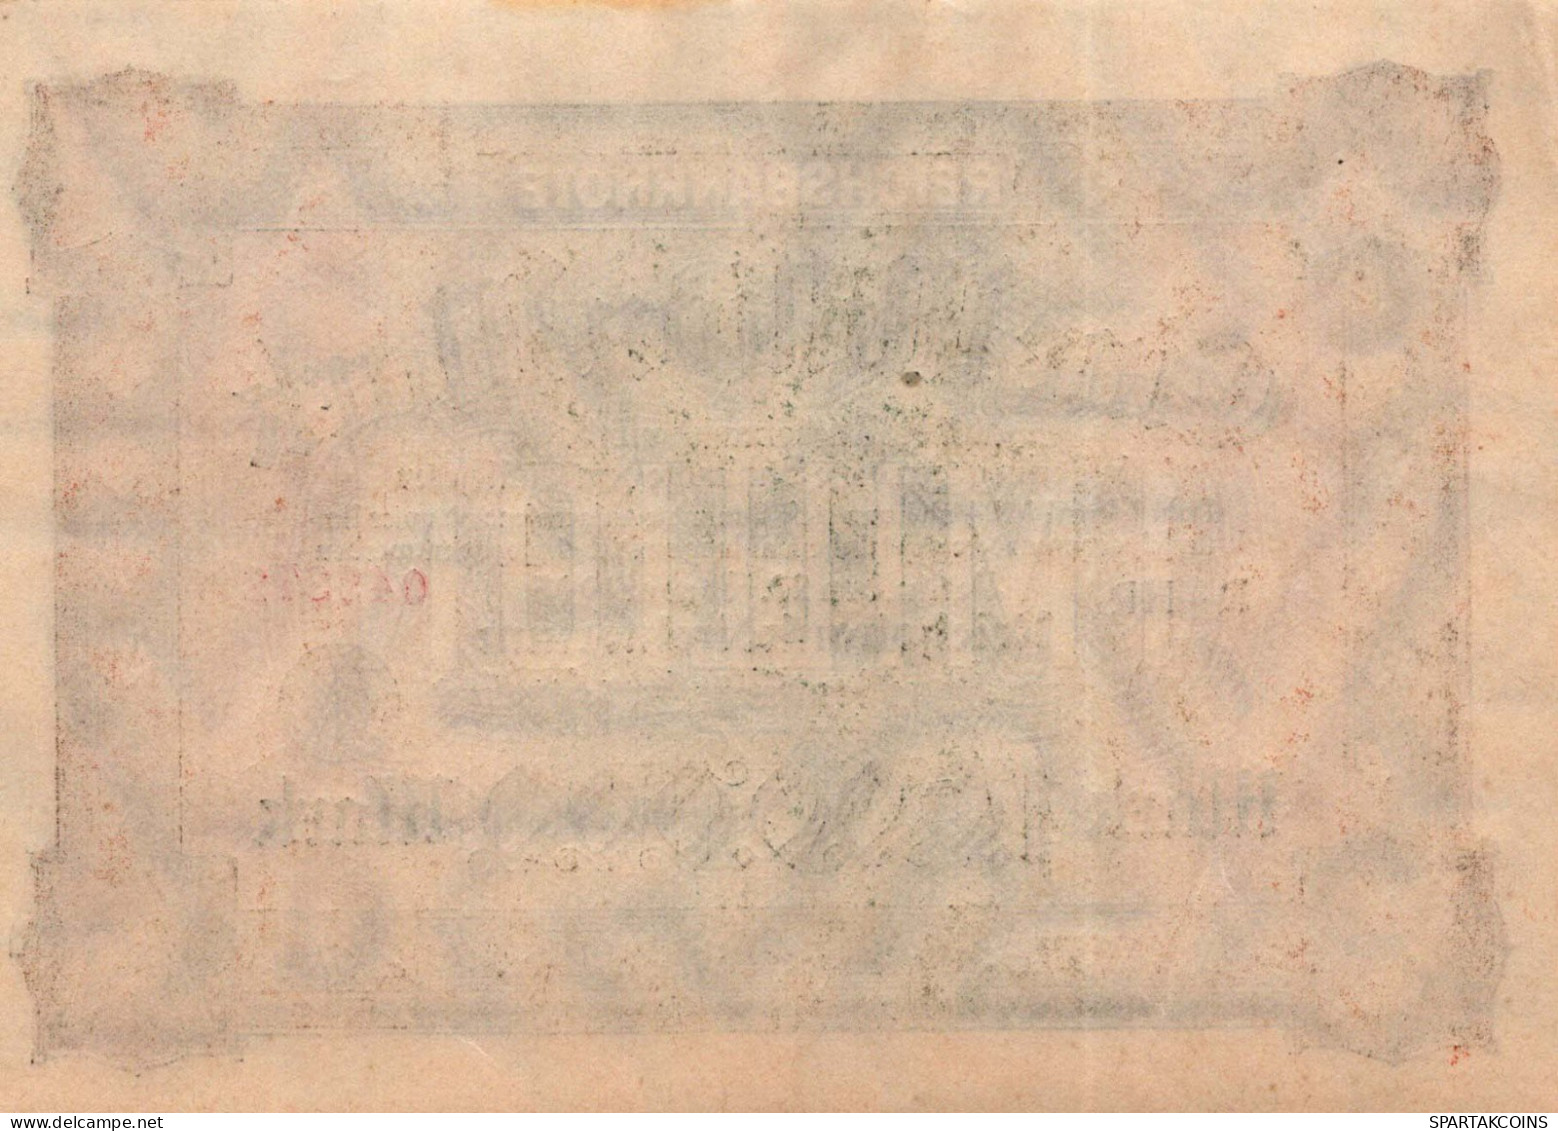 1 MILLION MARK 1923 Stadt BERLIN DEUTSCHLAND Papiergeld Banknote #PK925 - [11] Local Banknote Issues